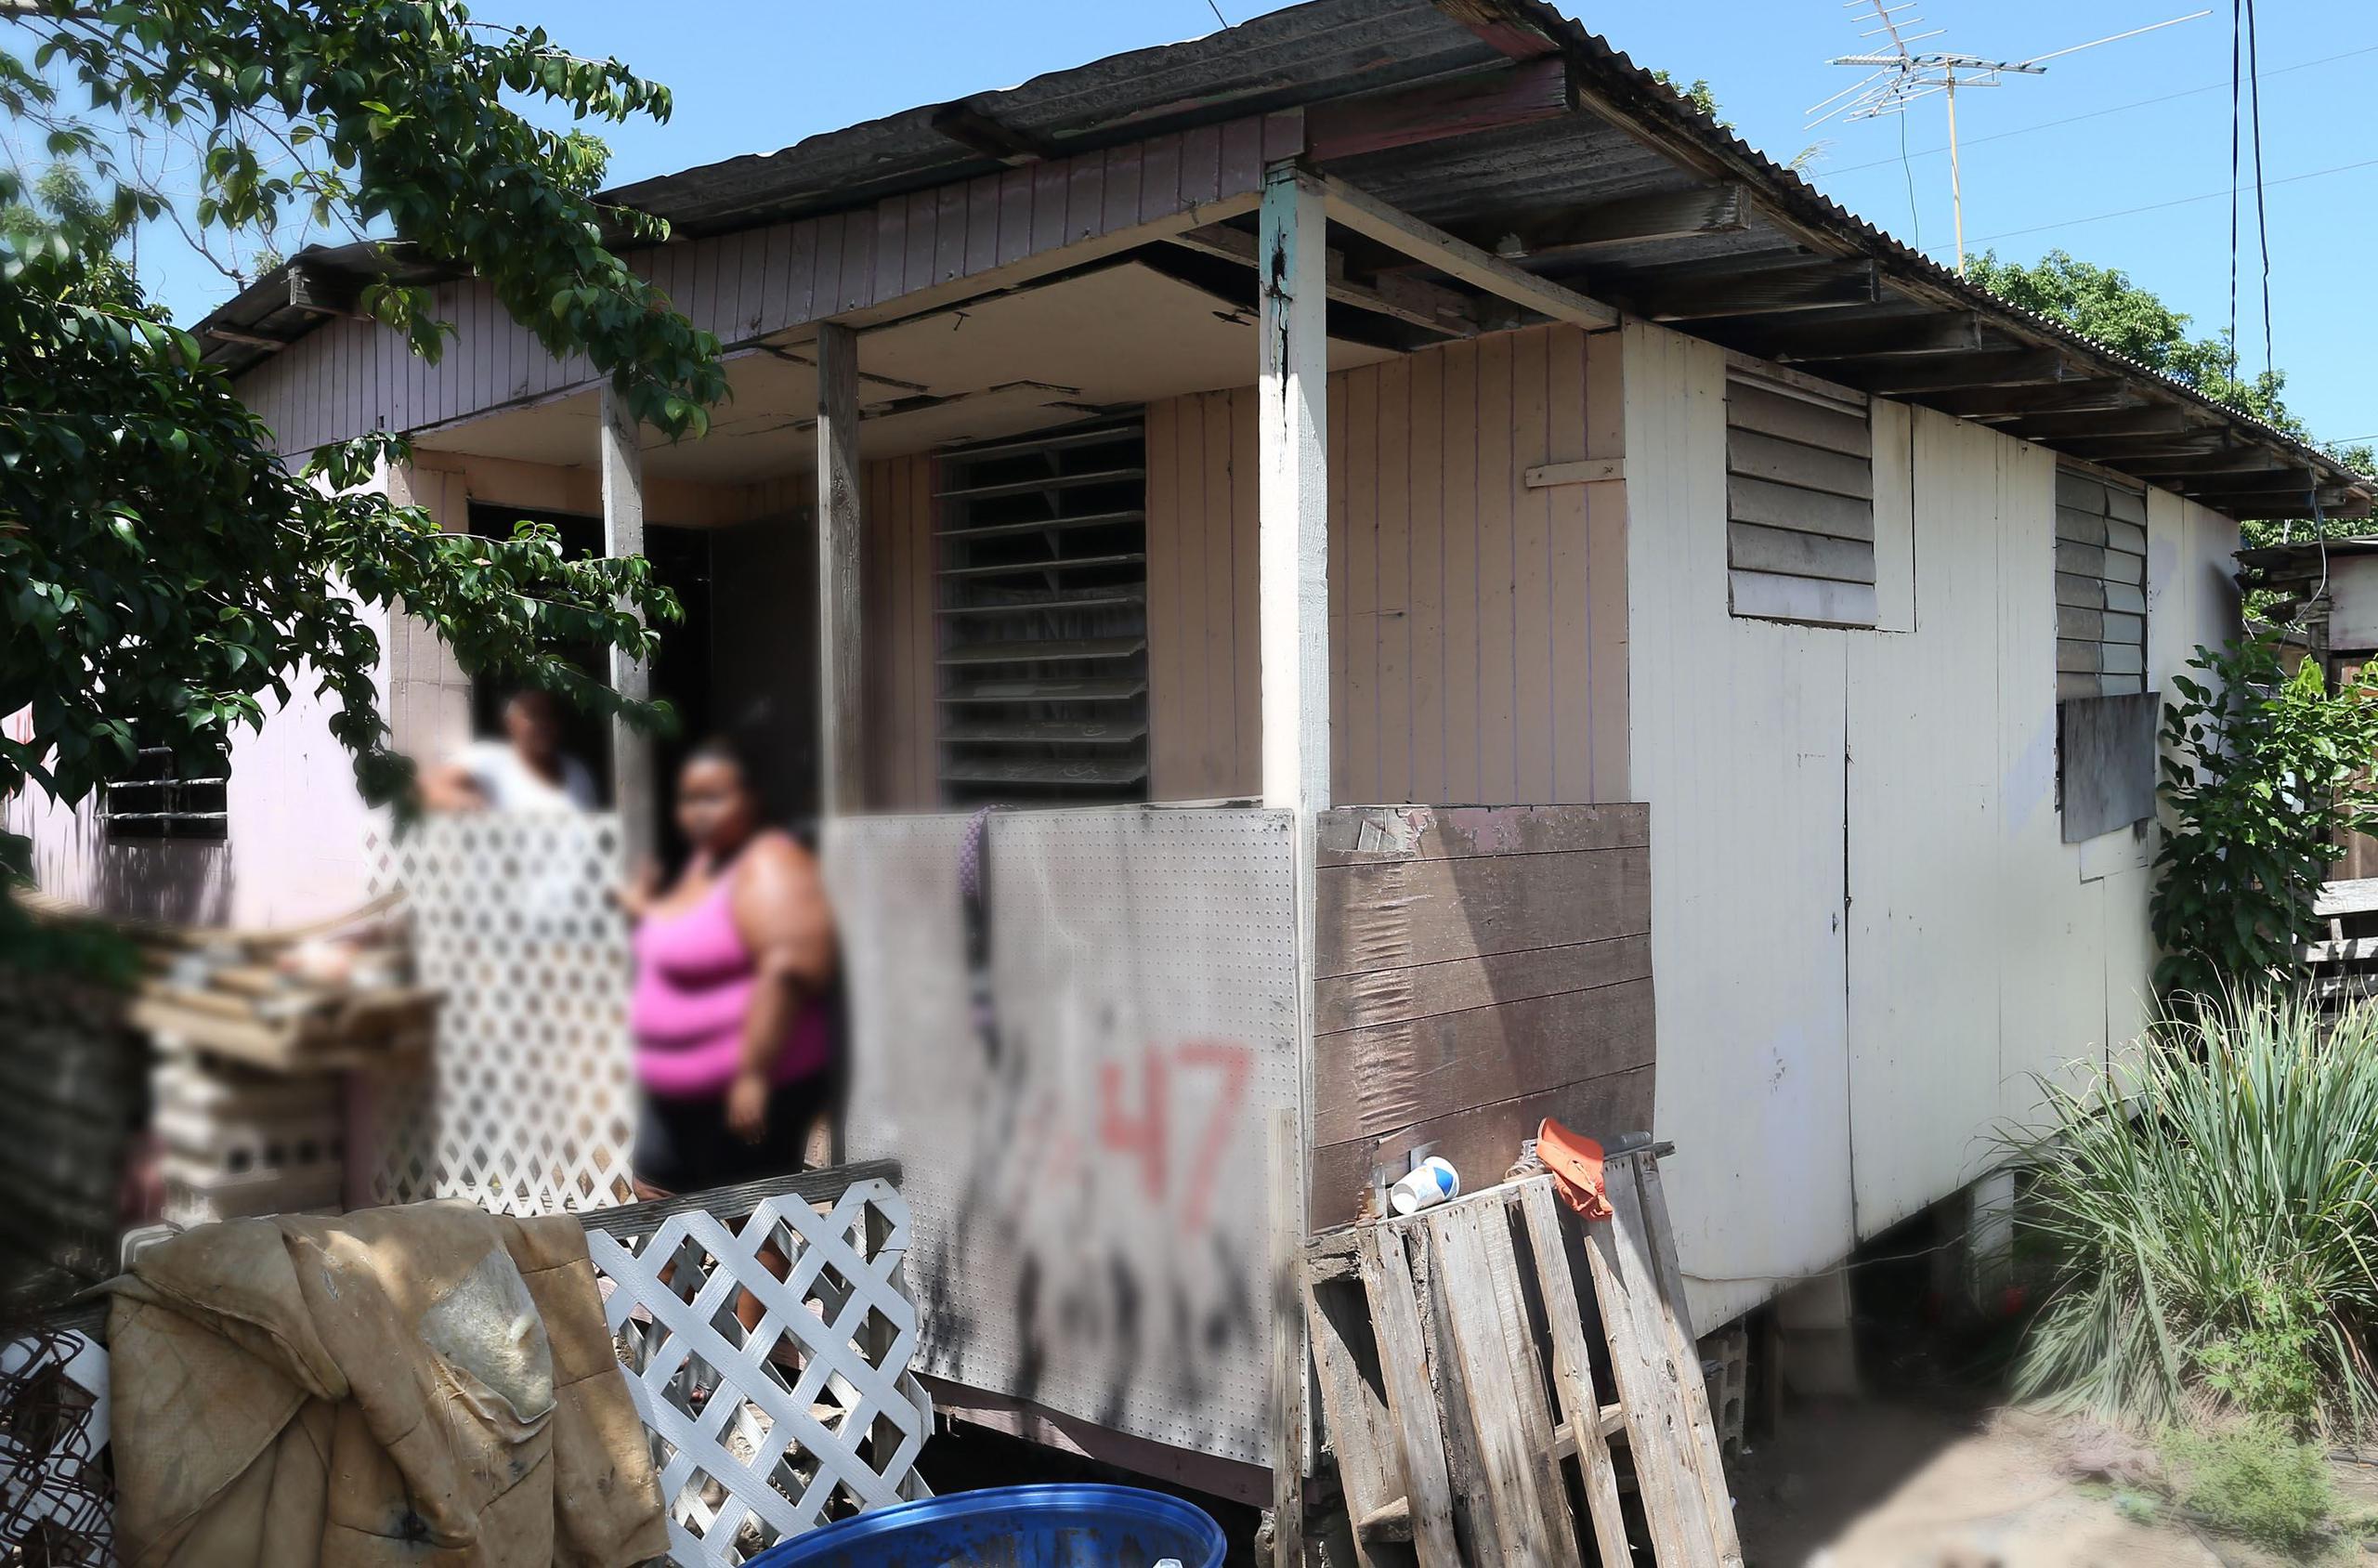 Entre el año 2000 y el 2012 se elevó el número de jefas de familia que viven bajo nivel de pobreza en Puerto Rico. (Archivo / GFR Media)